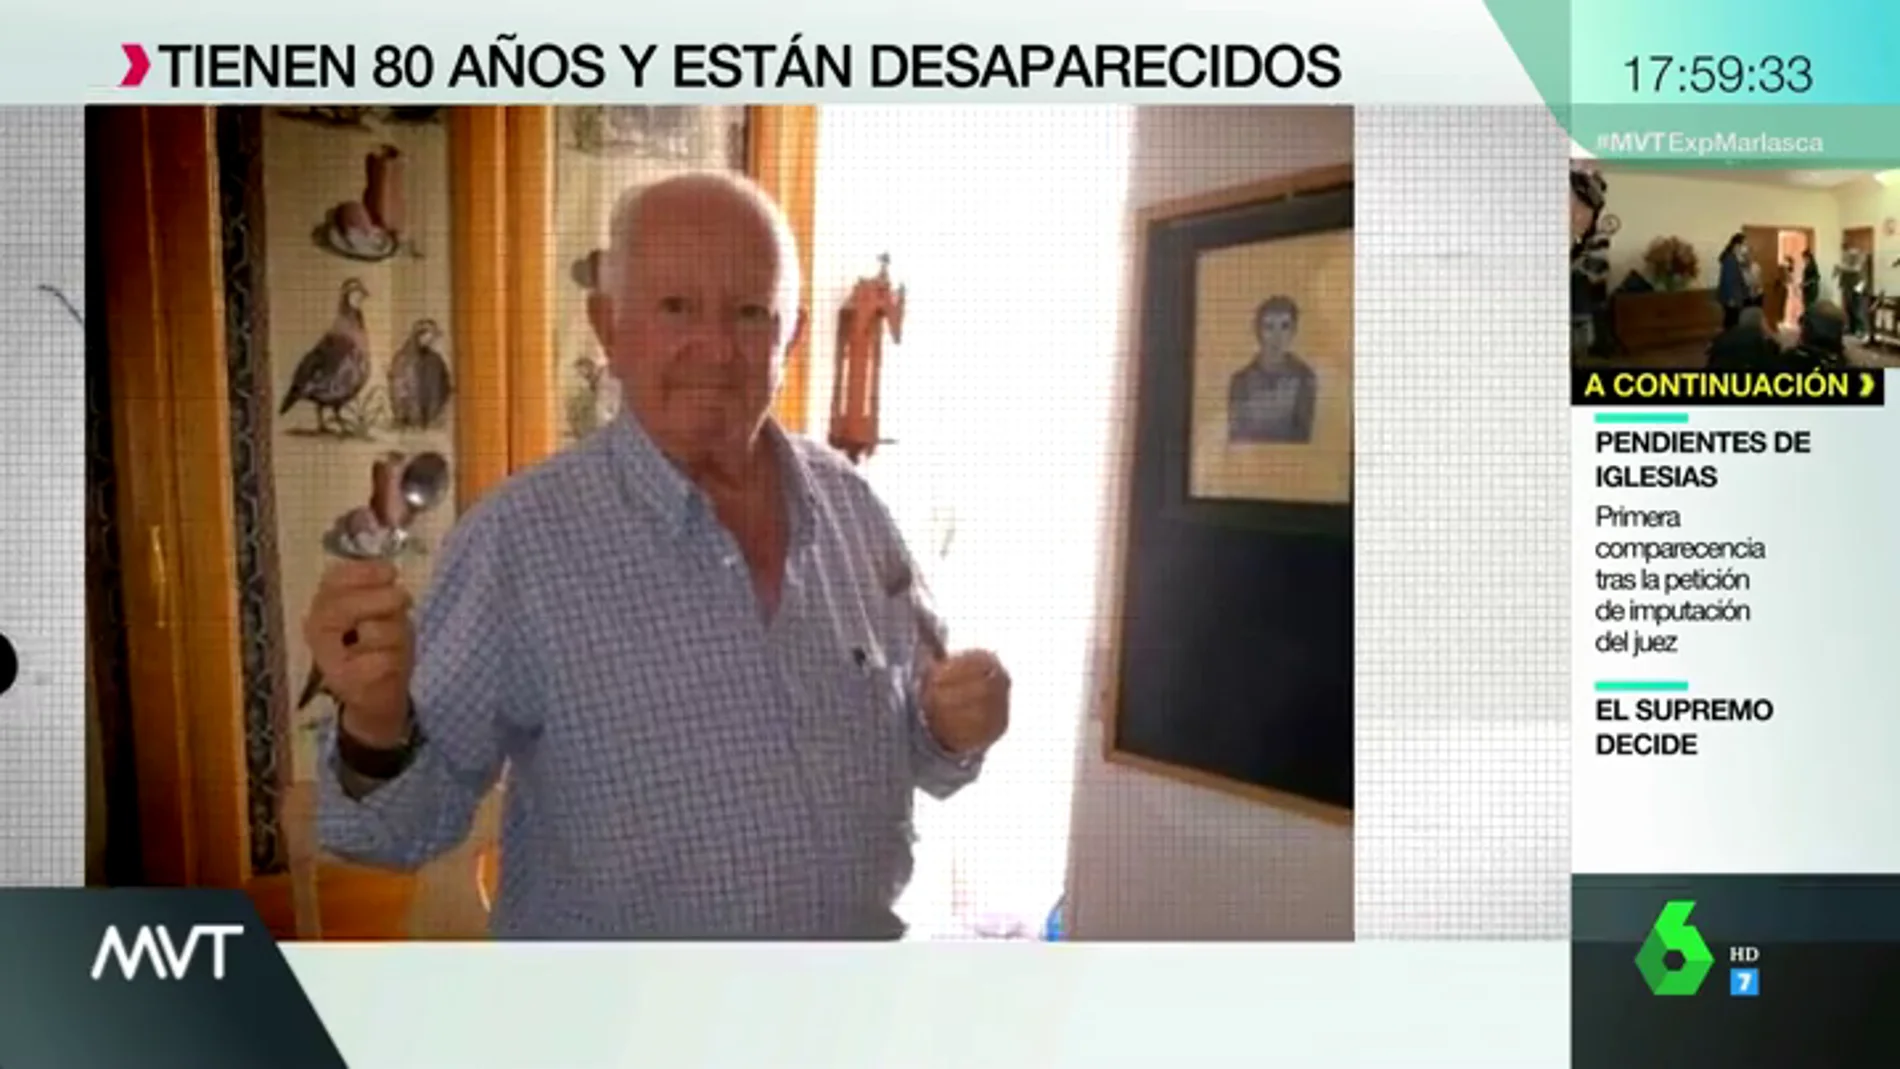 Jesús Gutiérrez, de 83 años, desapareció el 7 de agosto en Málaga